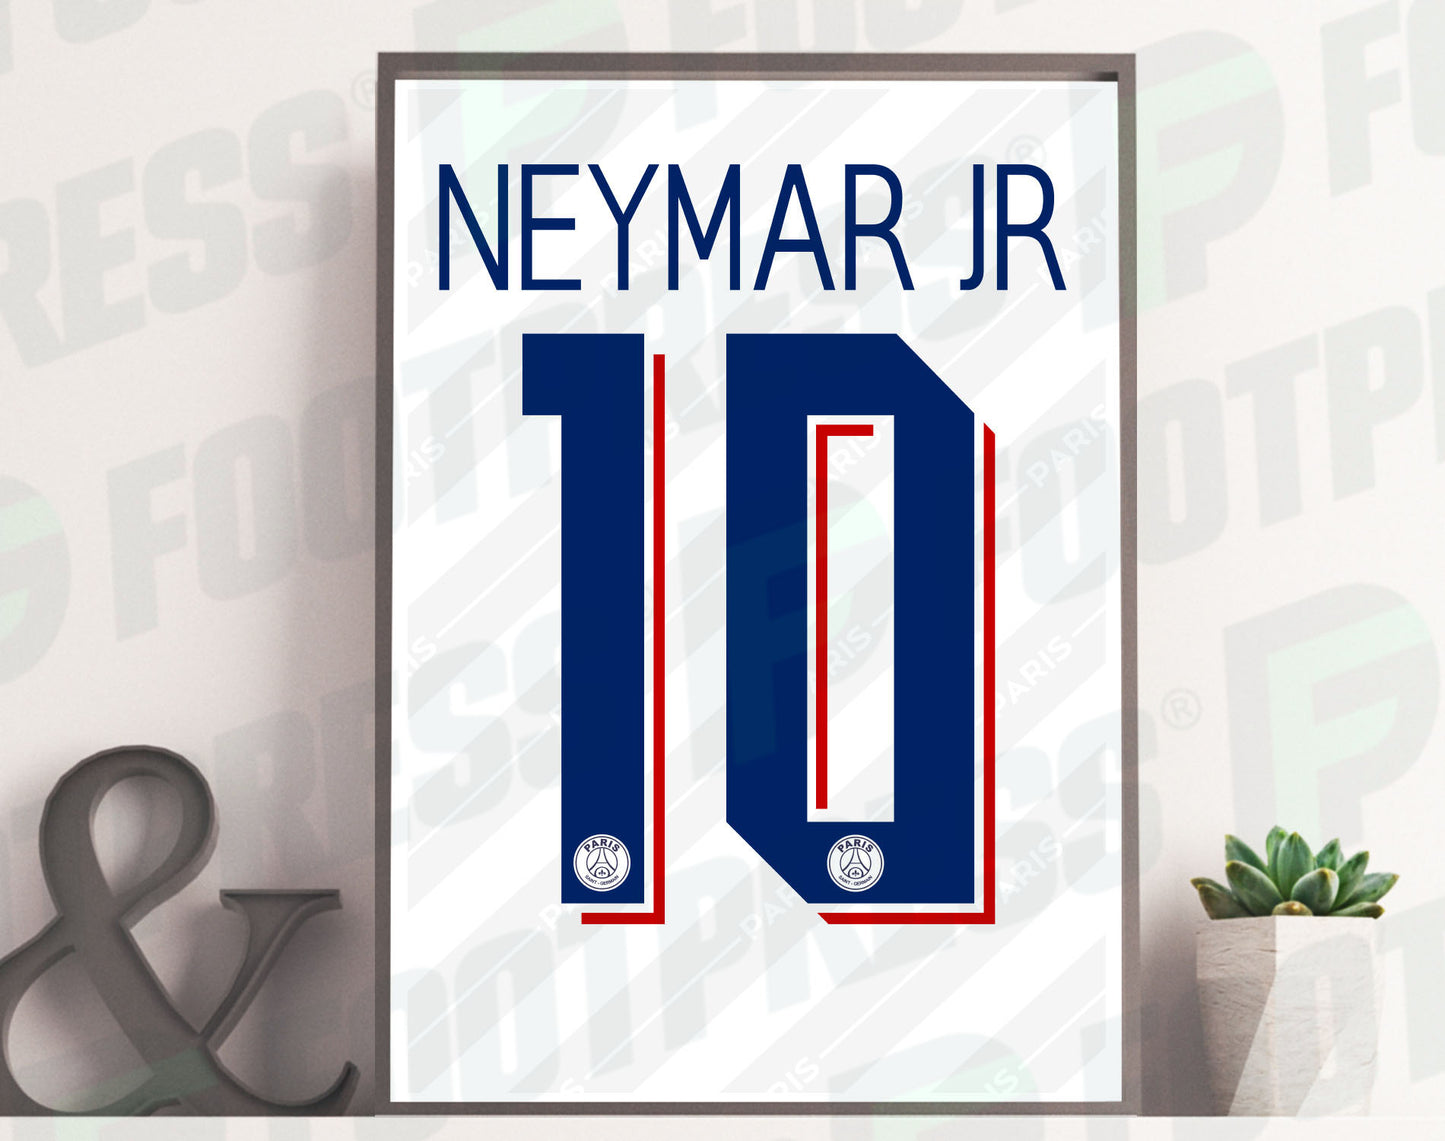 Affiche Neymar JR Paris Saint-Germain 2019/2020 Third - Ligue des Champions - Maillot Face arrière